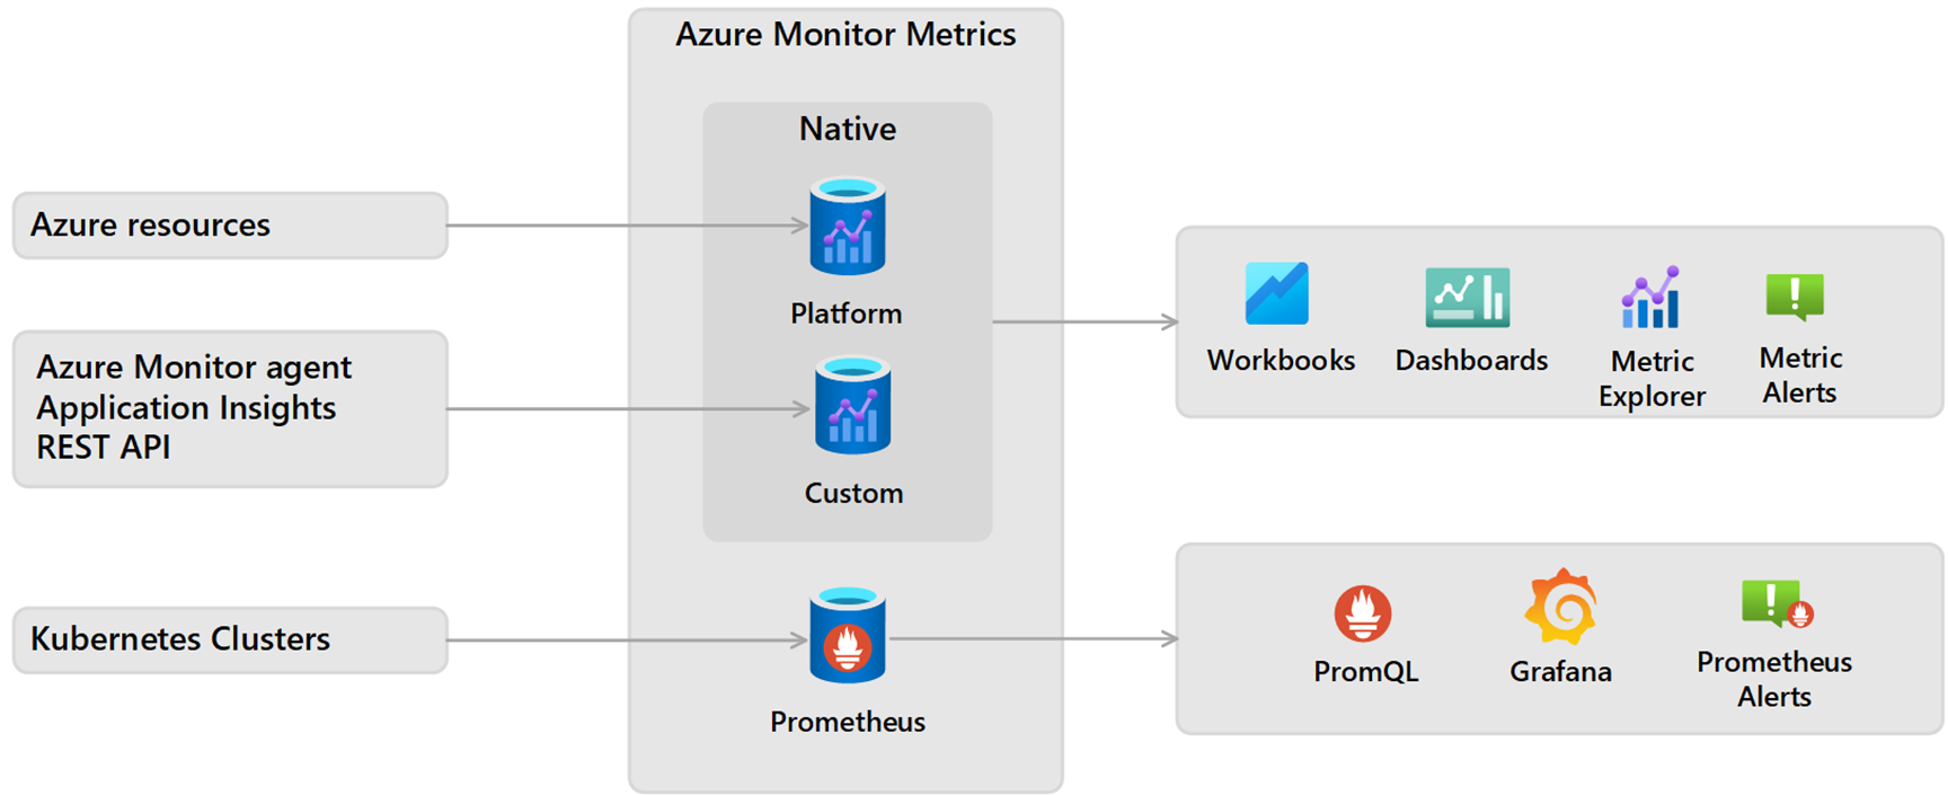 azure monitor metrics